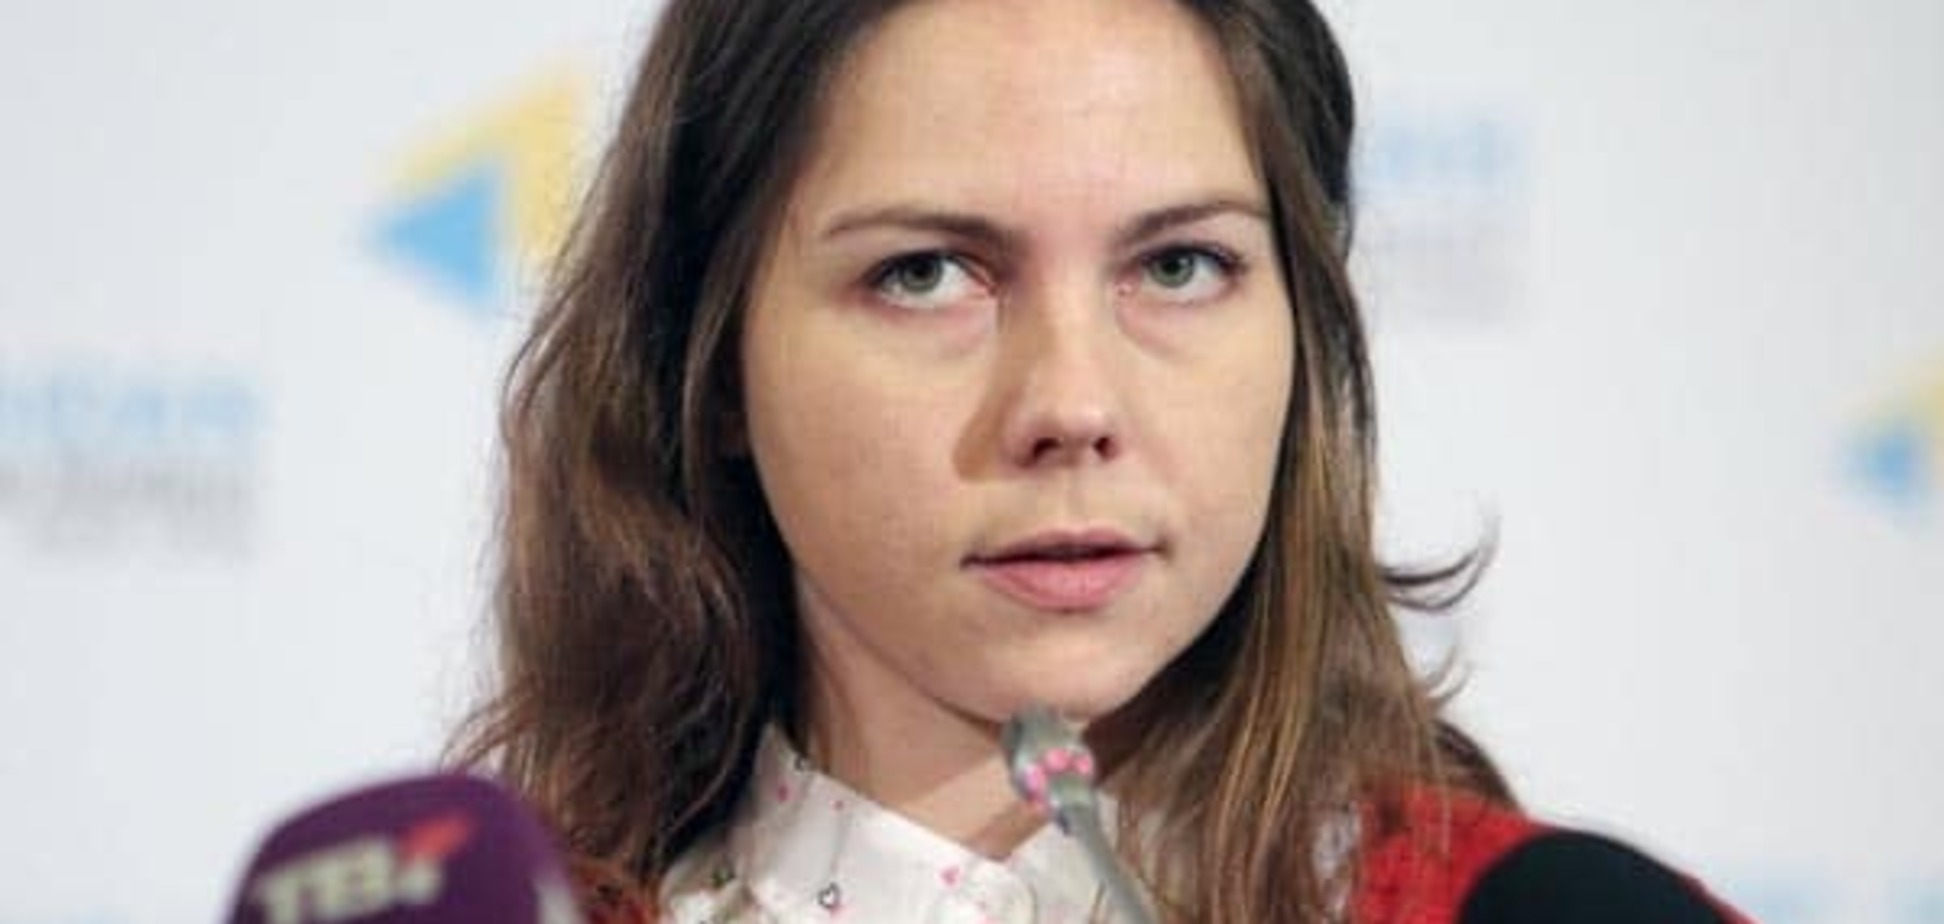 Сестру Савченко не пустили в Россию - адвокат